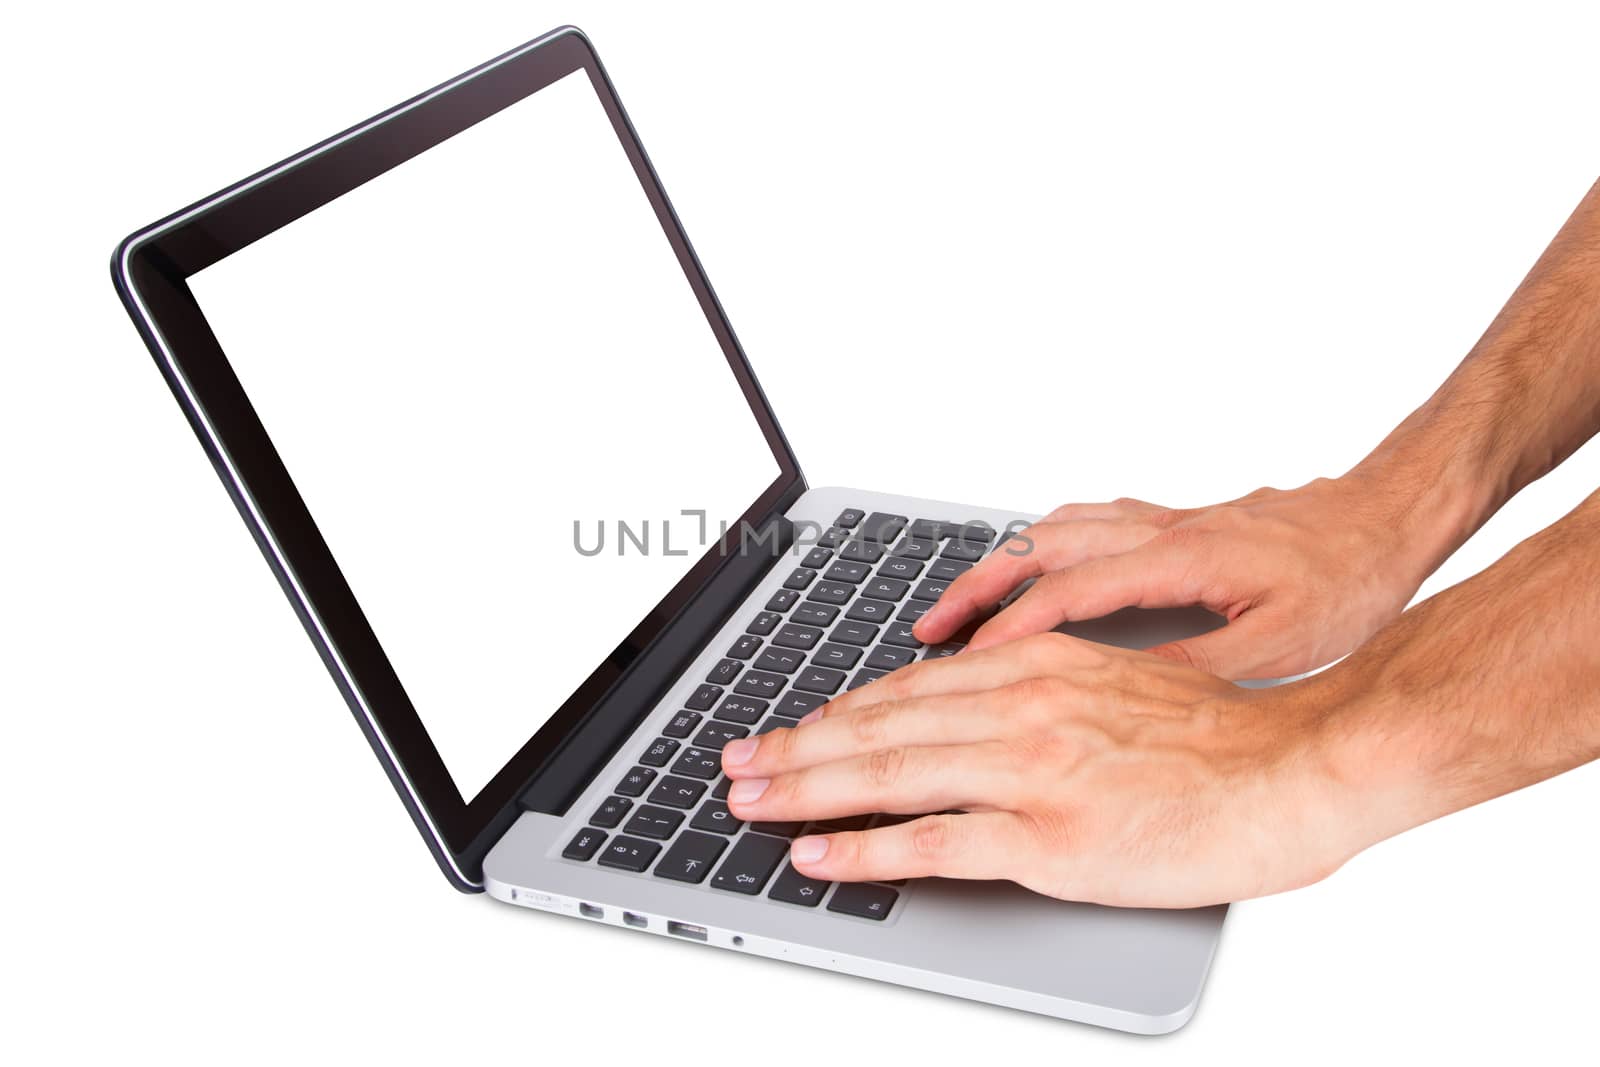 Hands Using Laptop by niglaynike